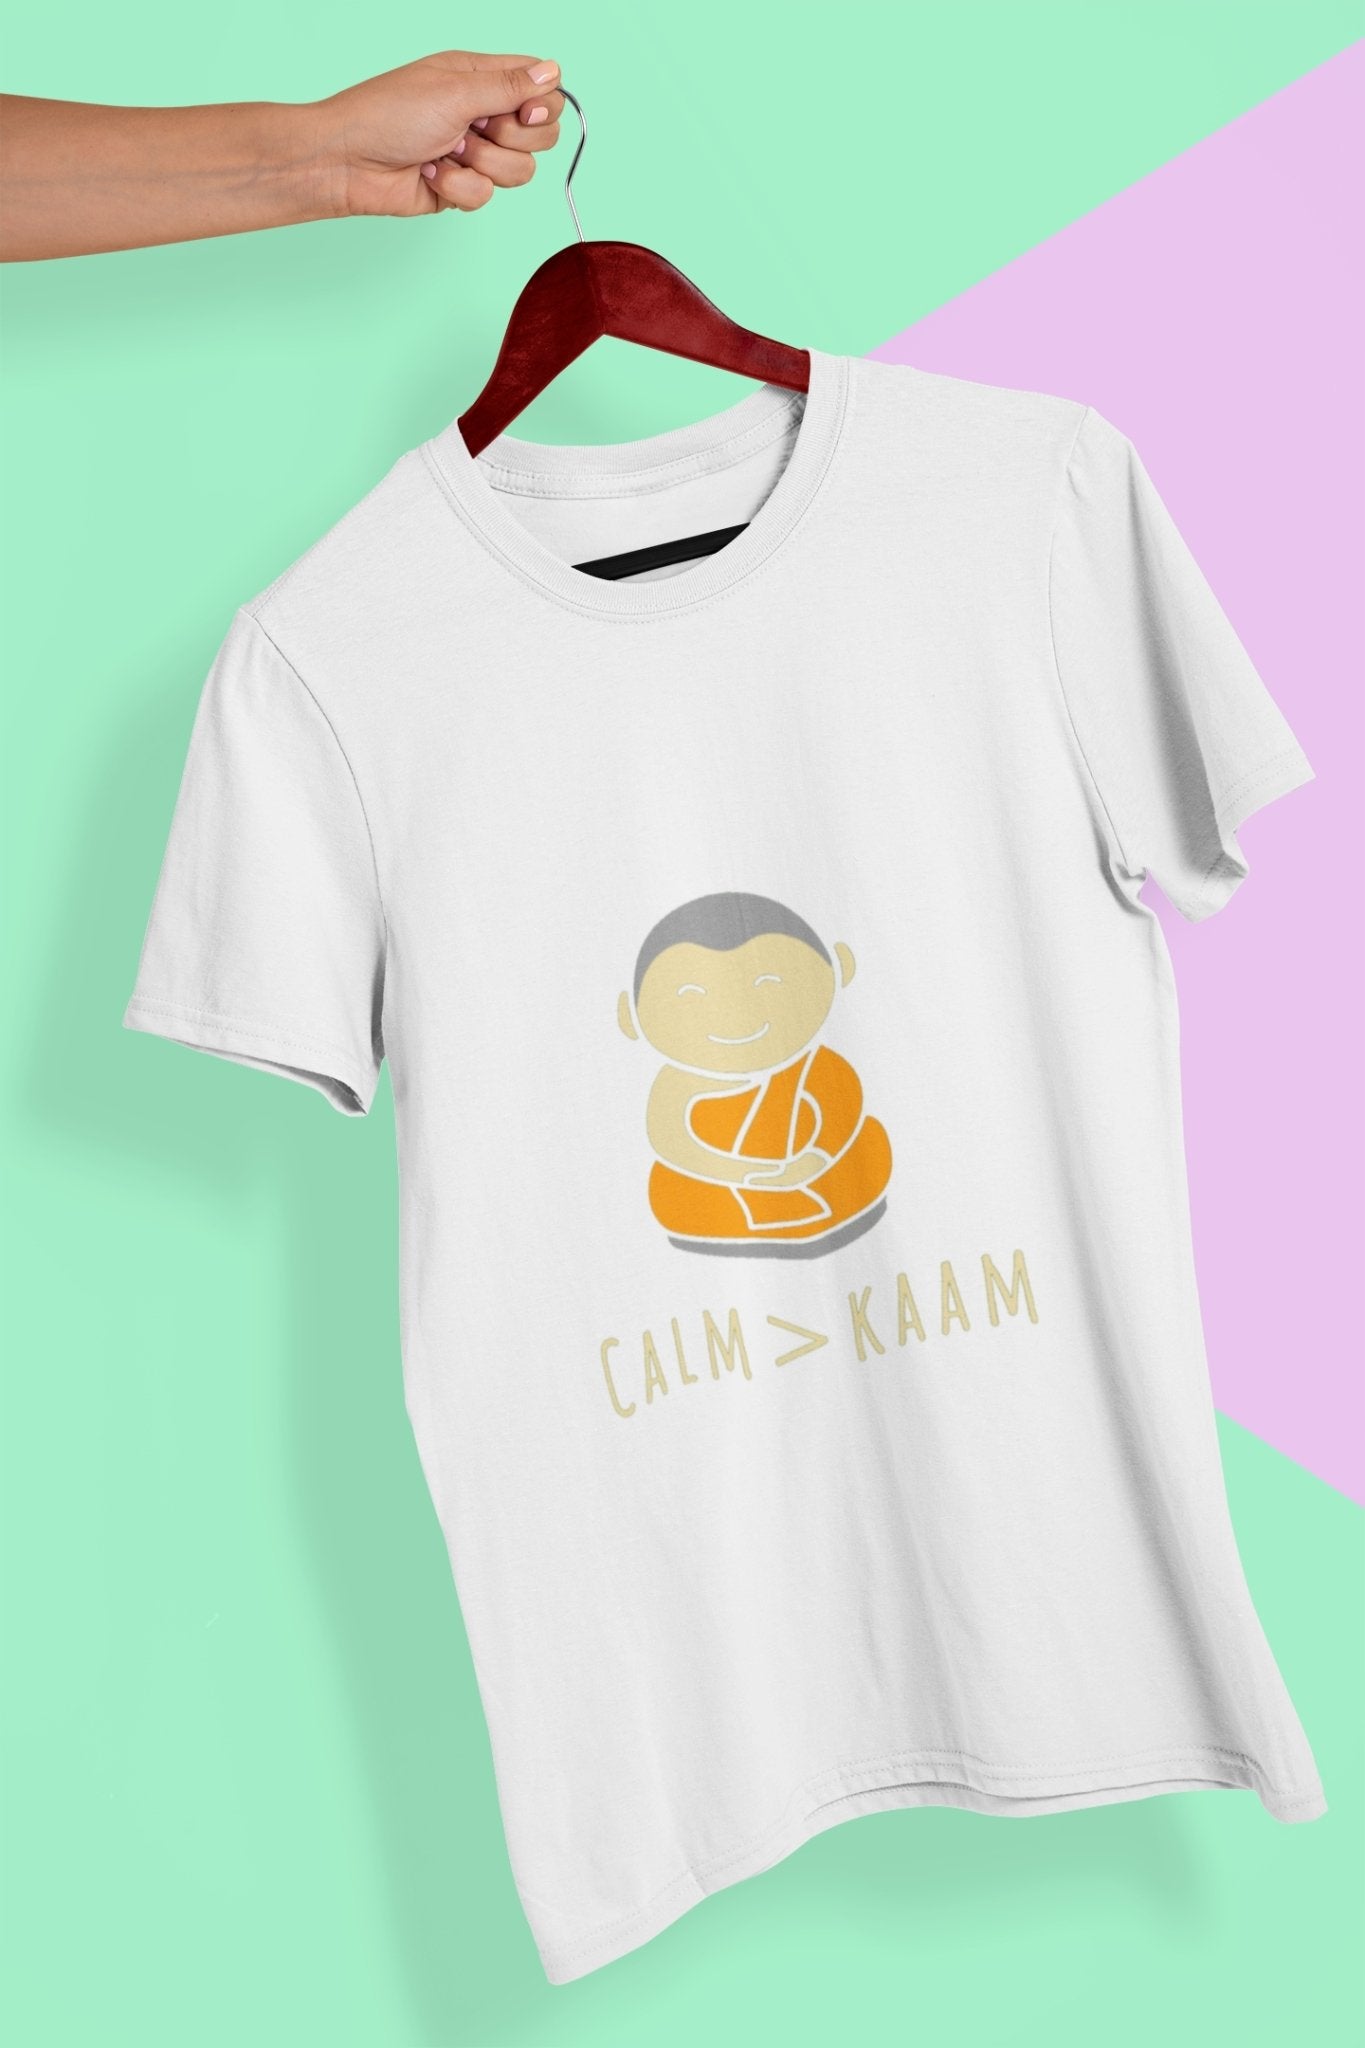 Calm or Kaam Mens Half Sleeves T-shirt- FunkyTeesClub - Funky Tees Club